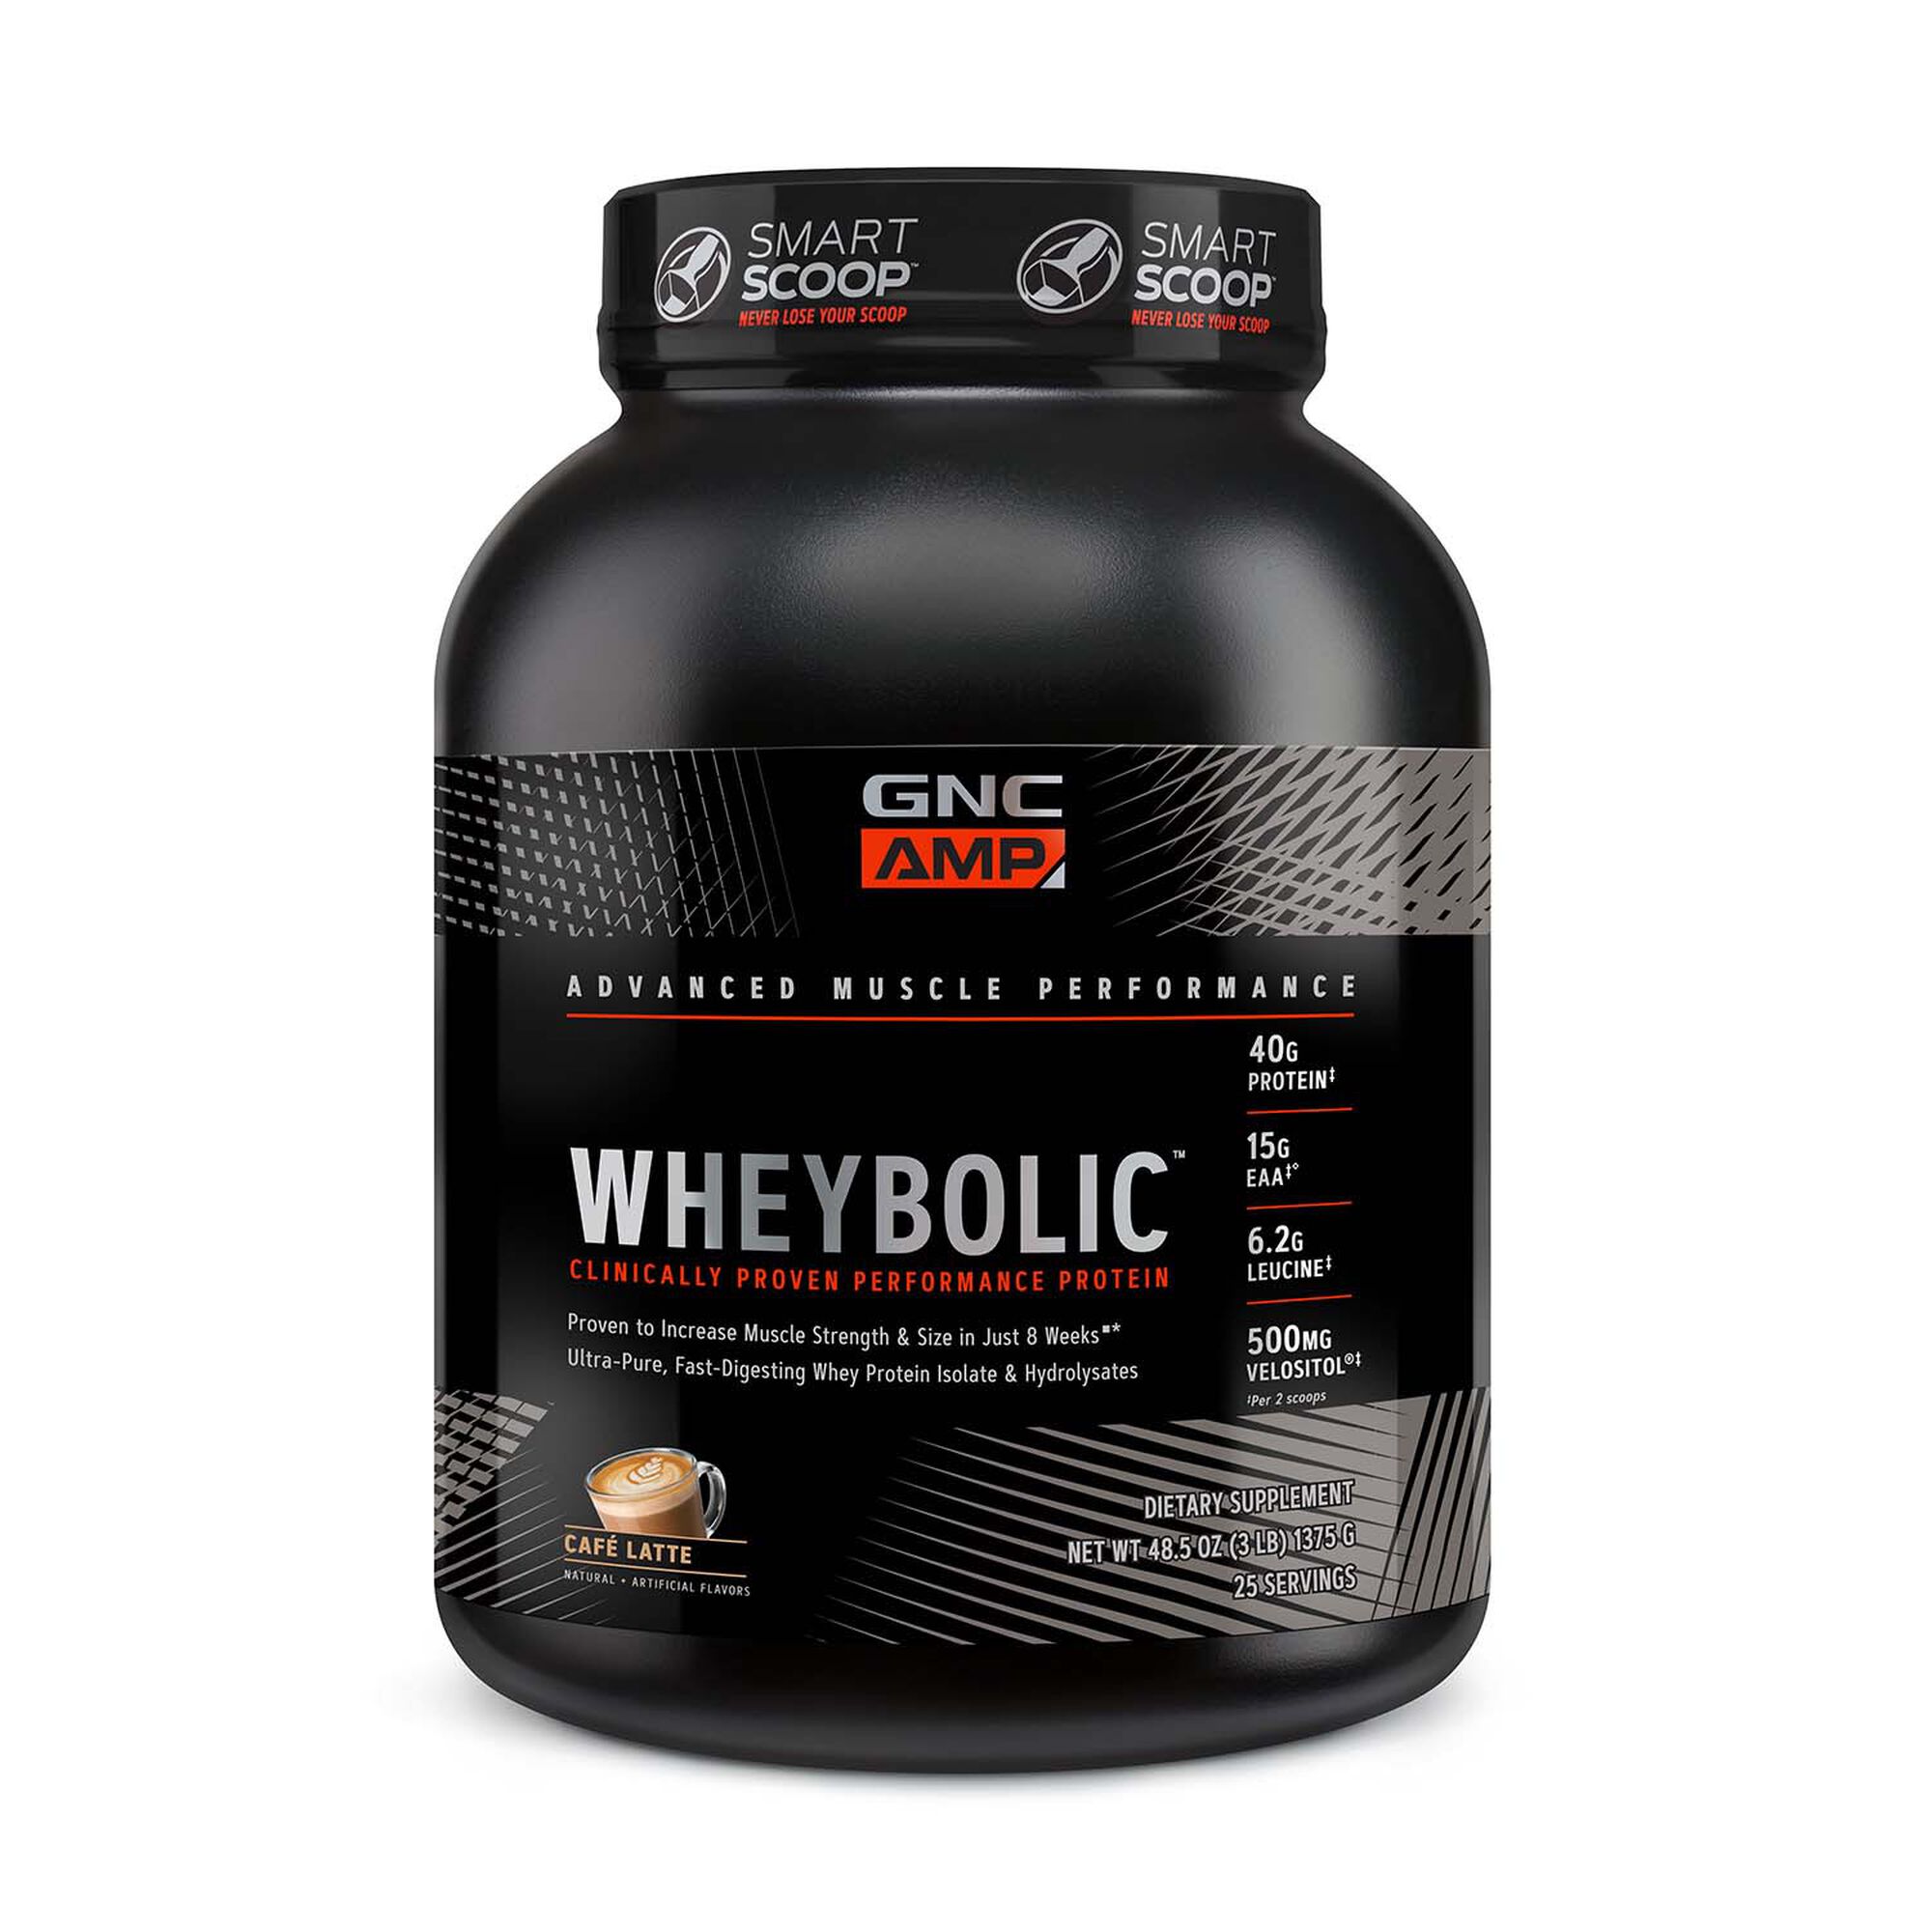 GNC AMP Wheybolic Whey Protein Cafe Latte